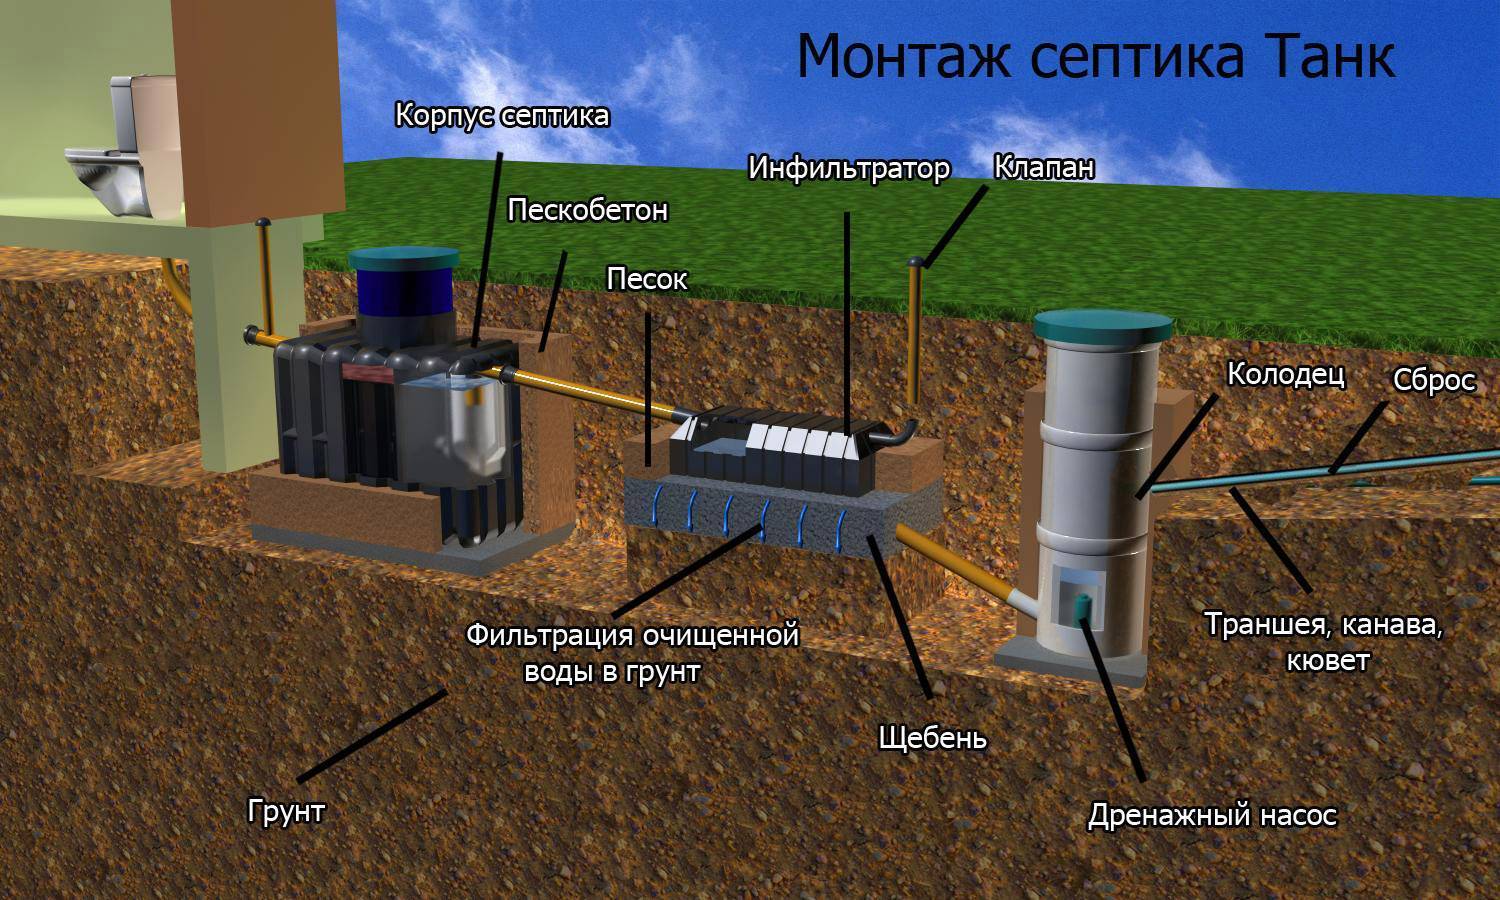 Монтаж автономной канализации (септика) под ключ в калужской и московской областях